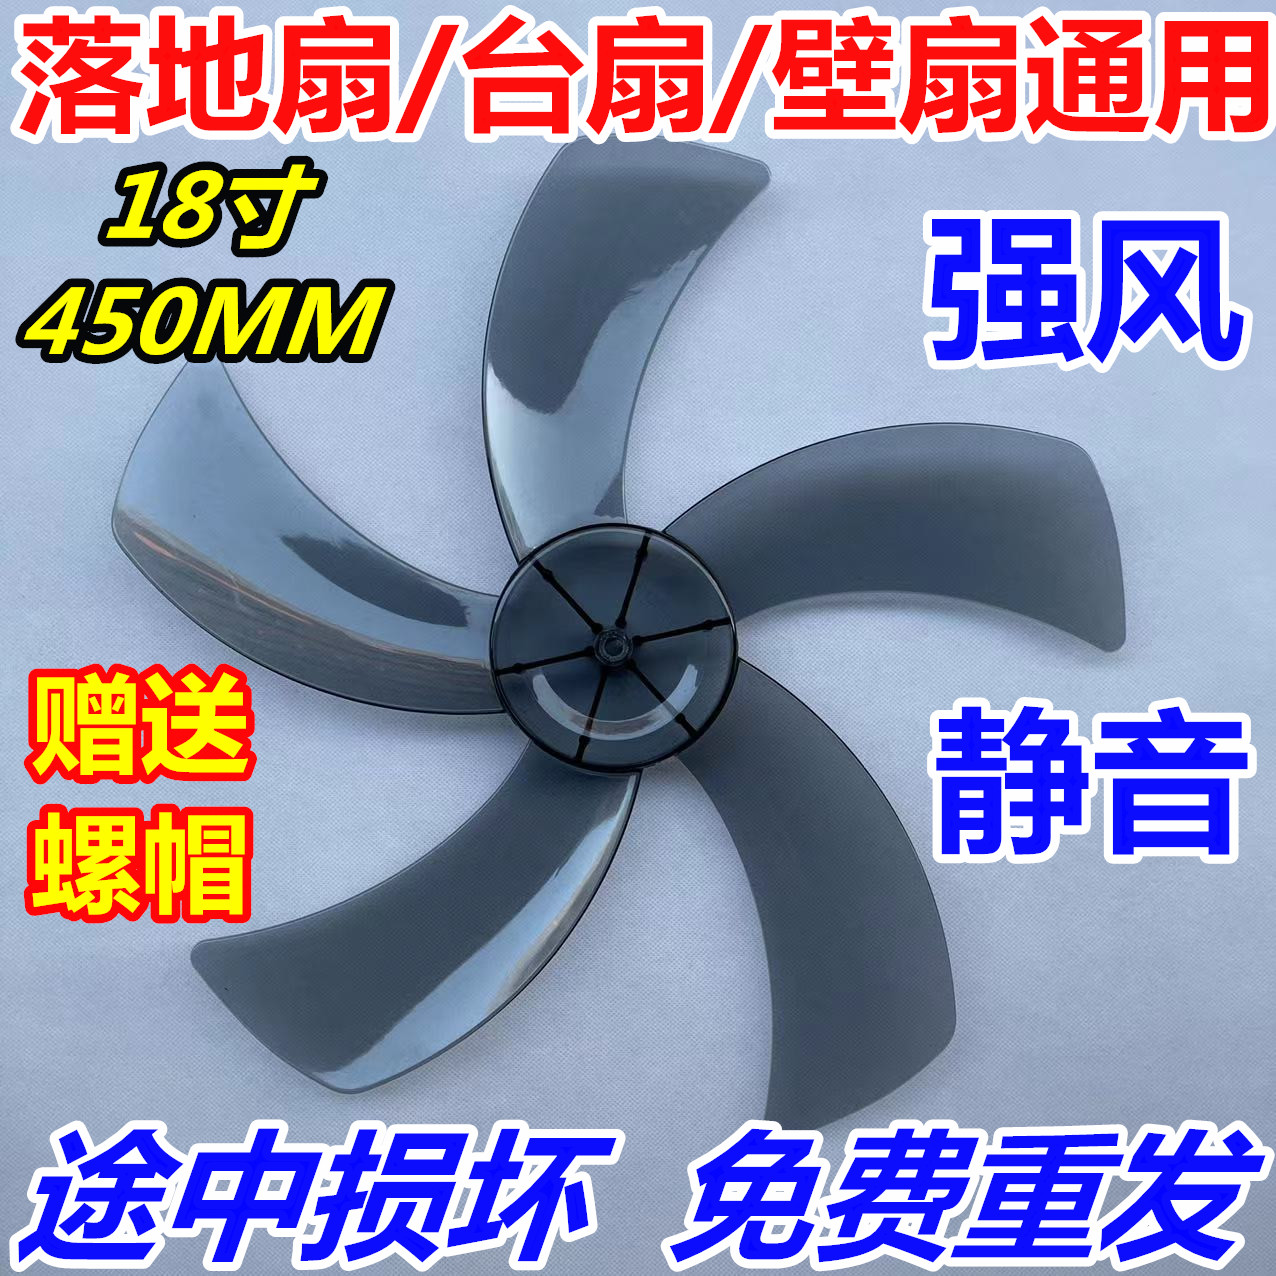 适用长城钻石吉星电风扇配件风叶扇叶子18寸AS45cm450mm风扇叶